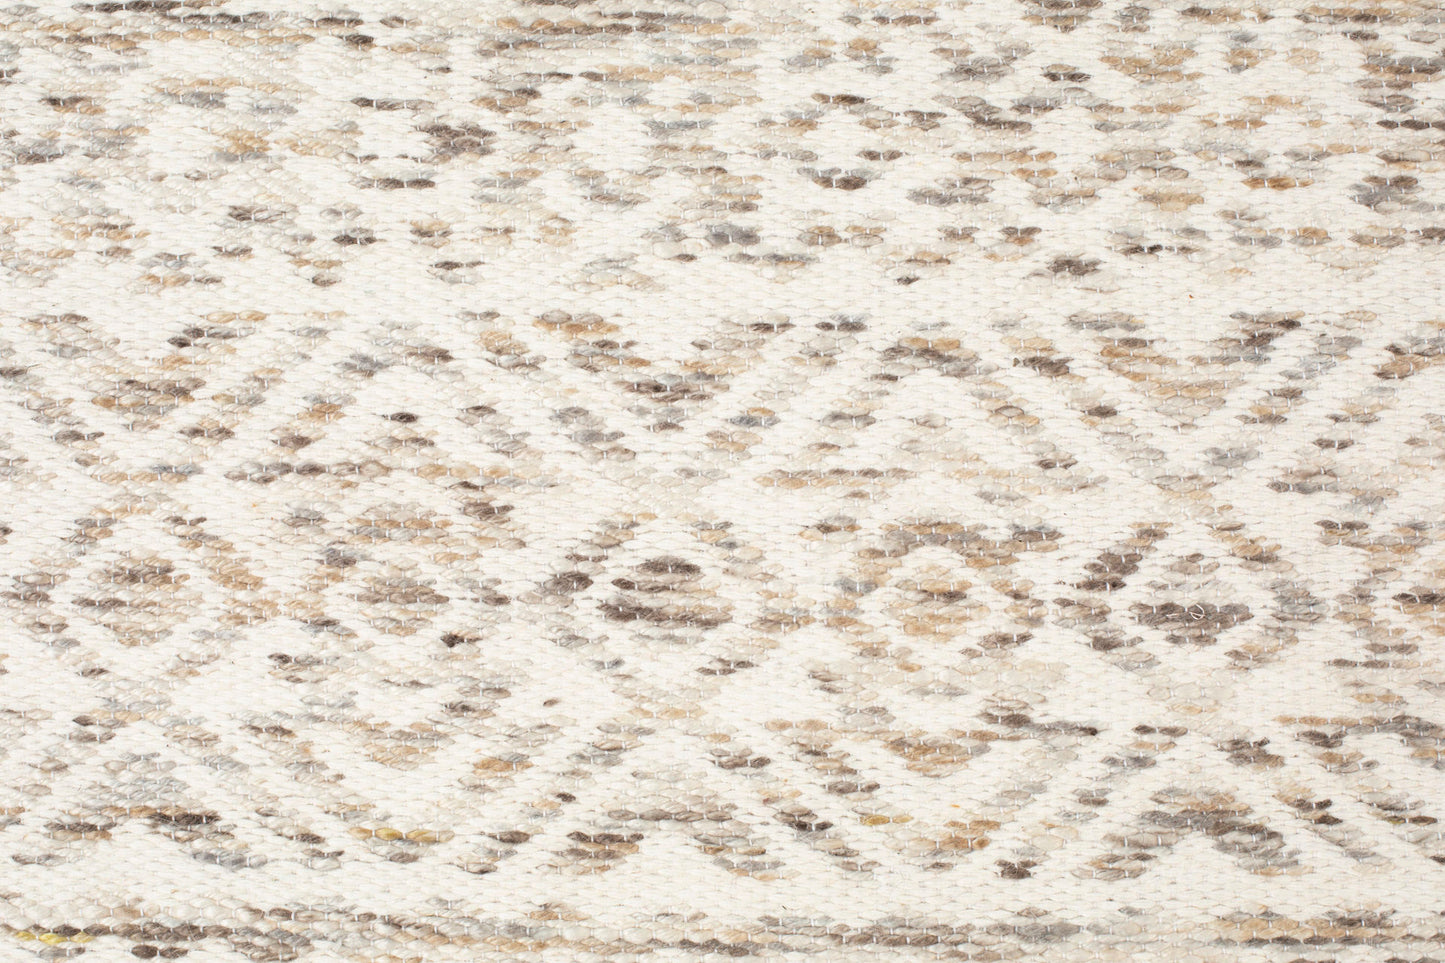 Tapis Nancy's DeForest - Classique - Taupe - Laine, Polyester, Coton - 200 cm x 300 cm x cm